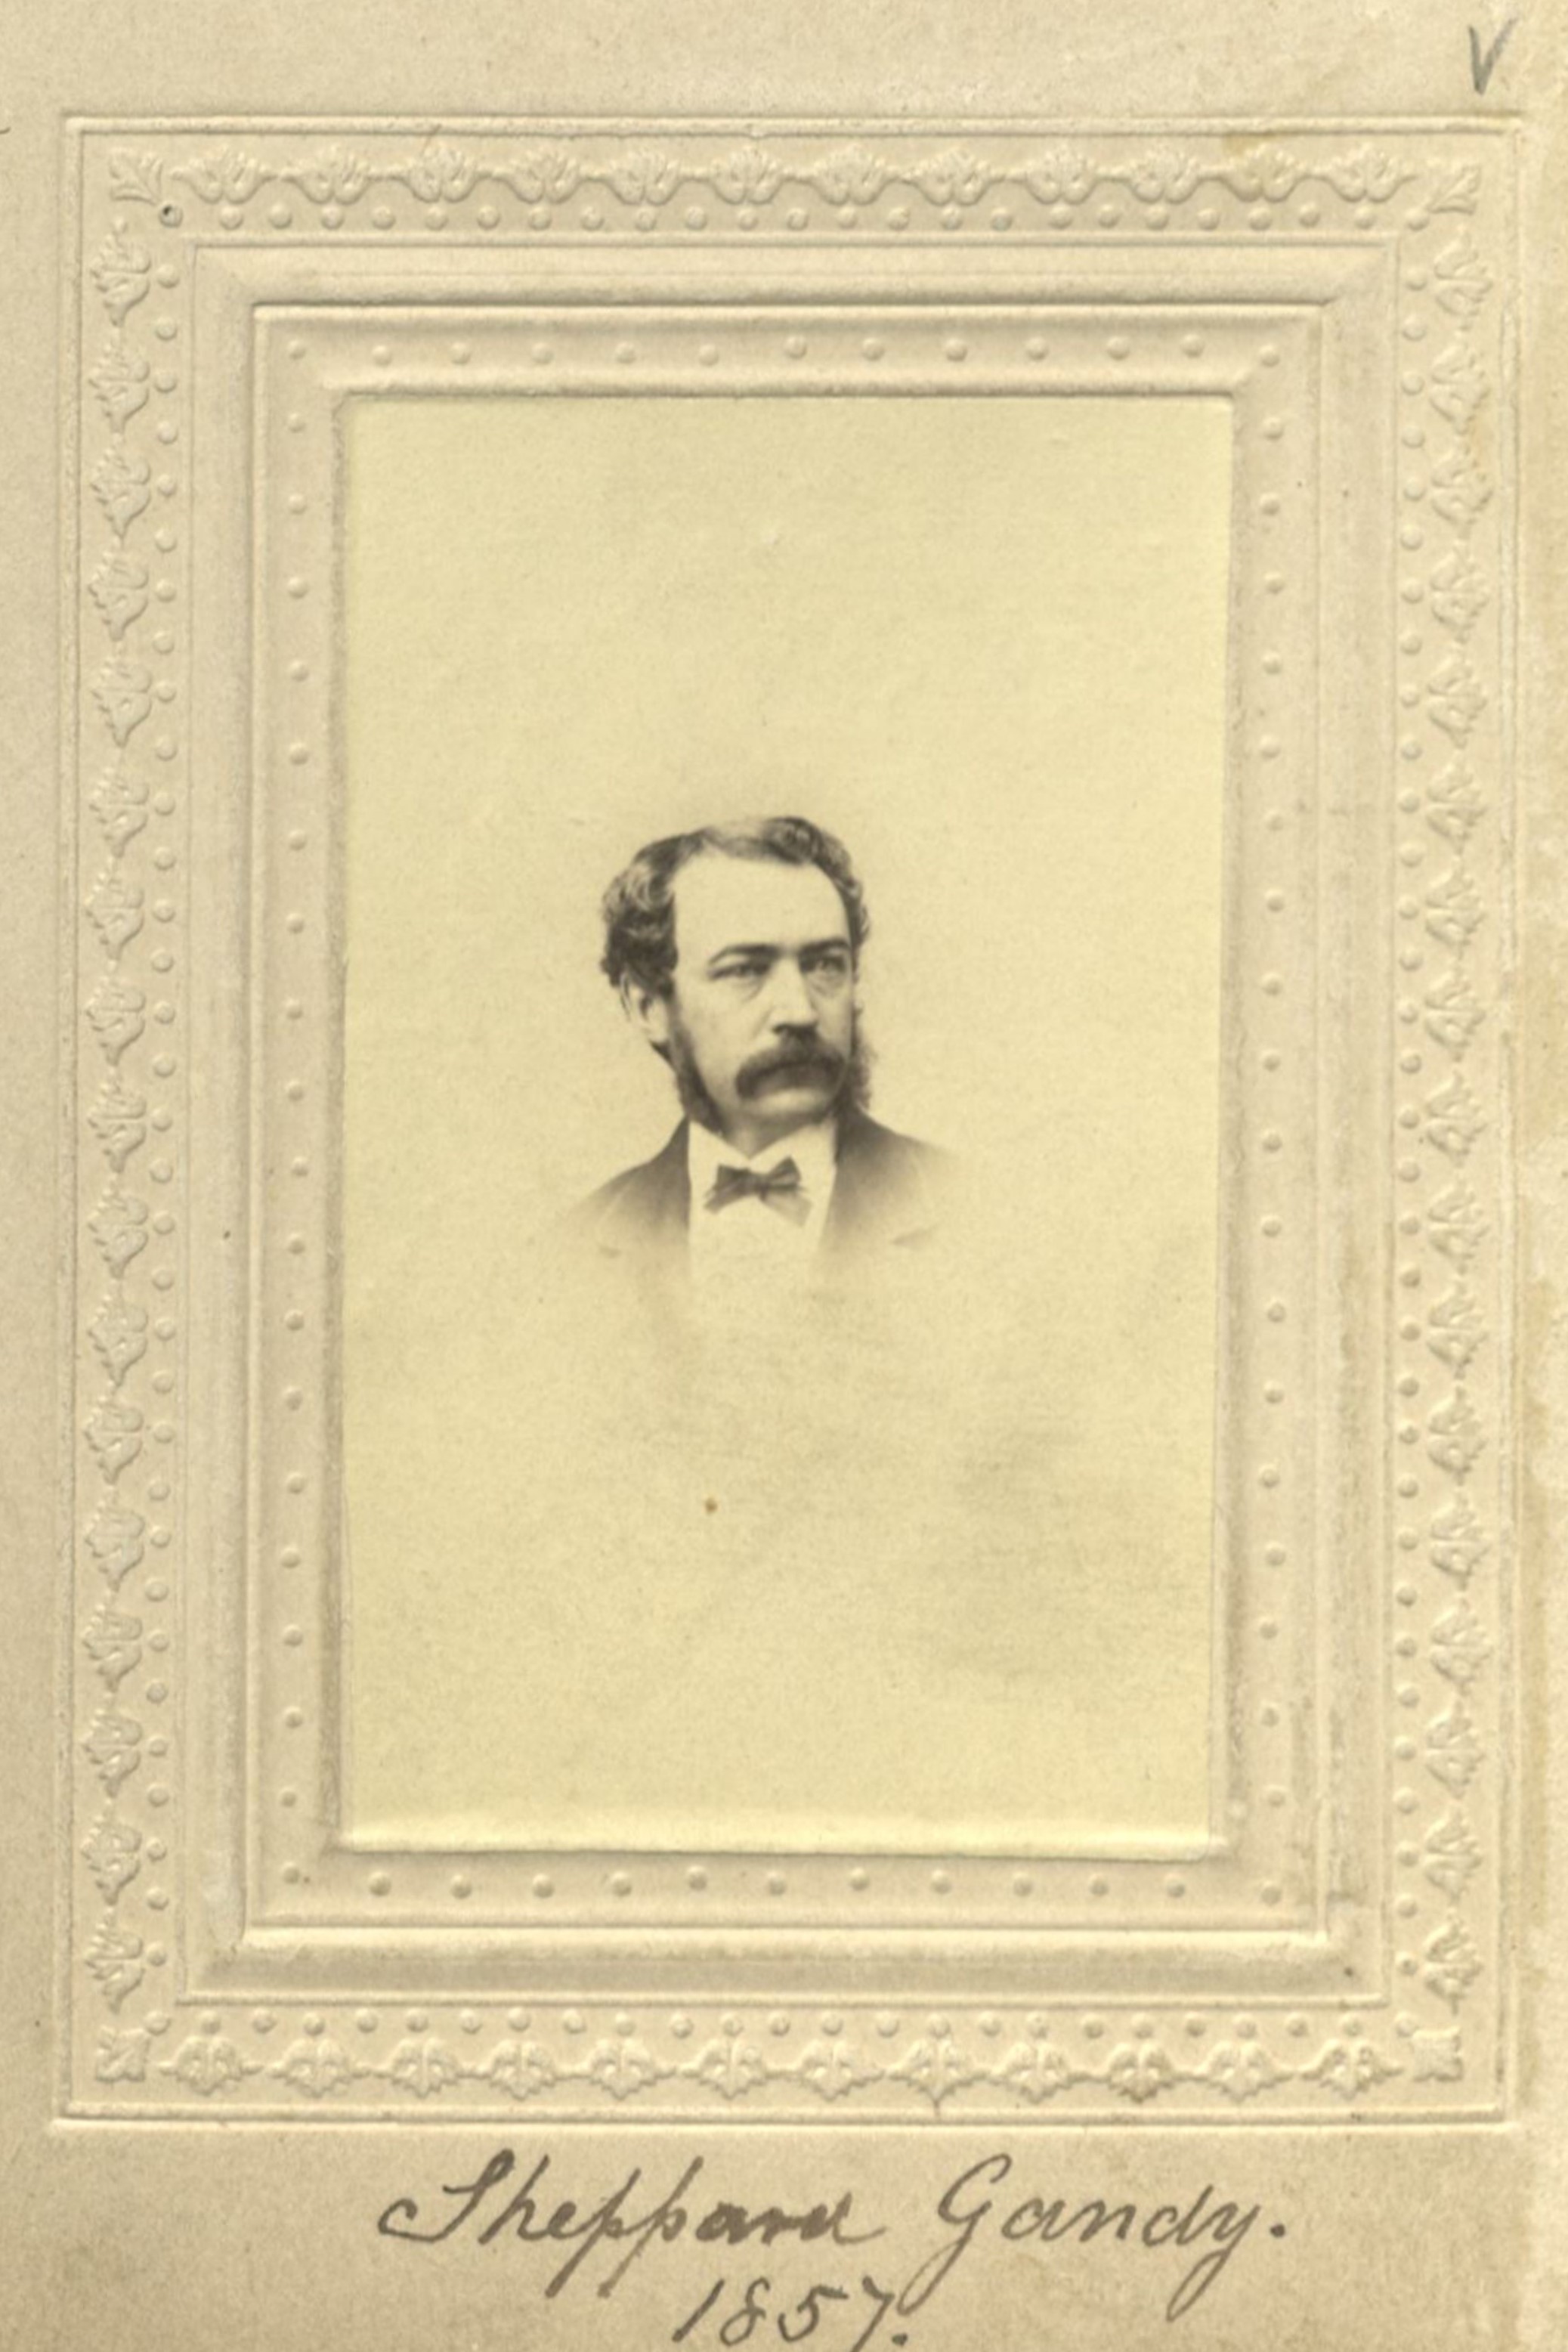 Member portrait of Sheppard Gandy